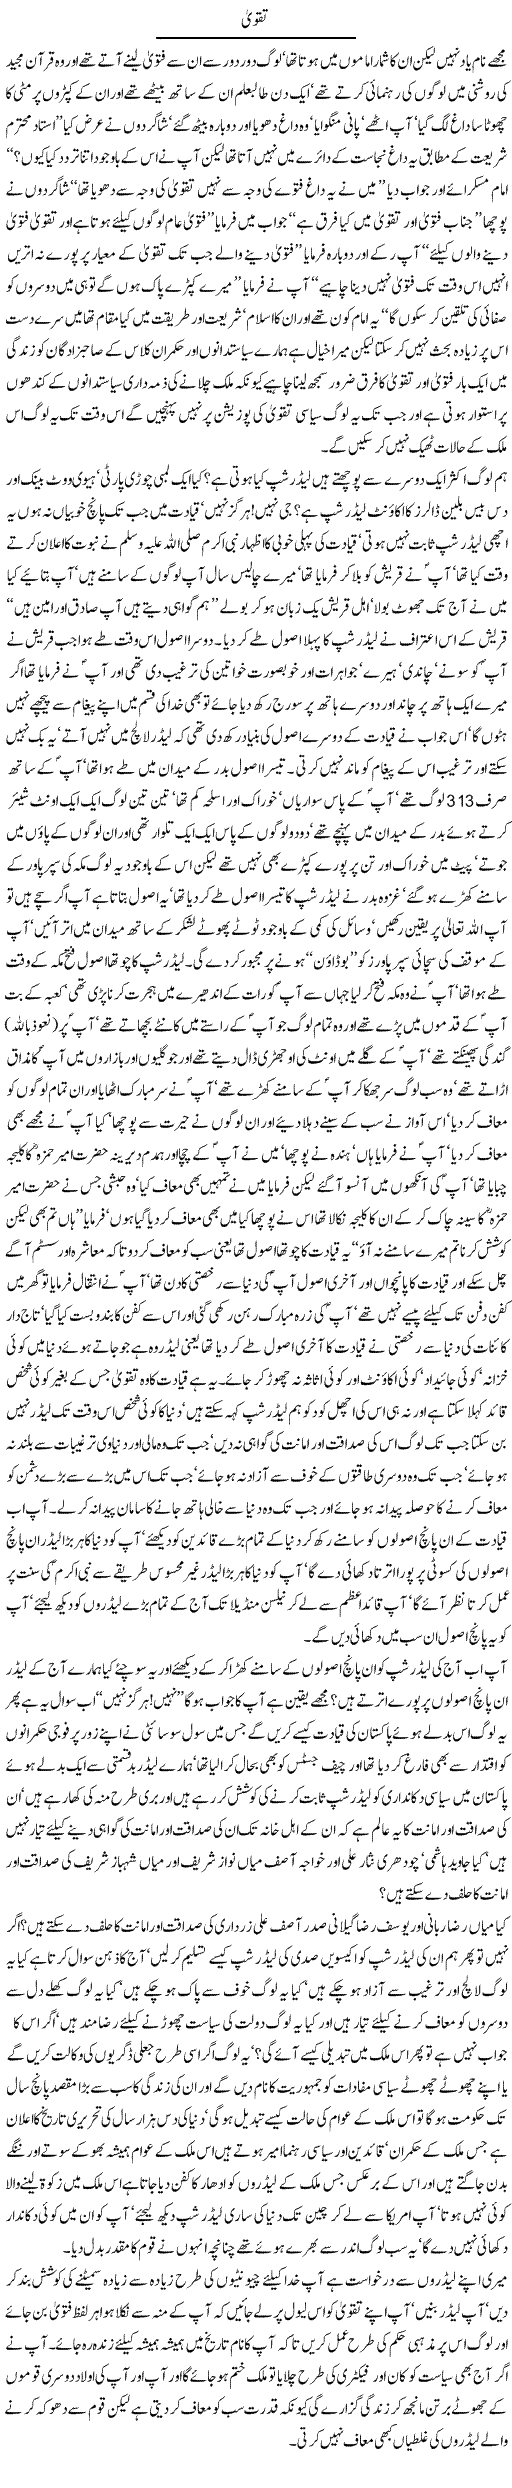 Taqwa Express Column Javed Chaudhry 16 July 2010